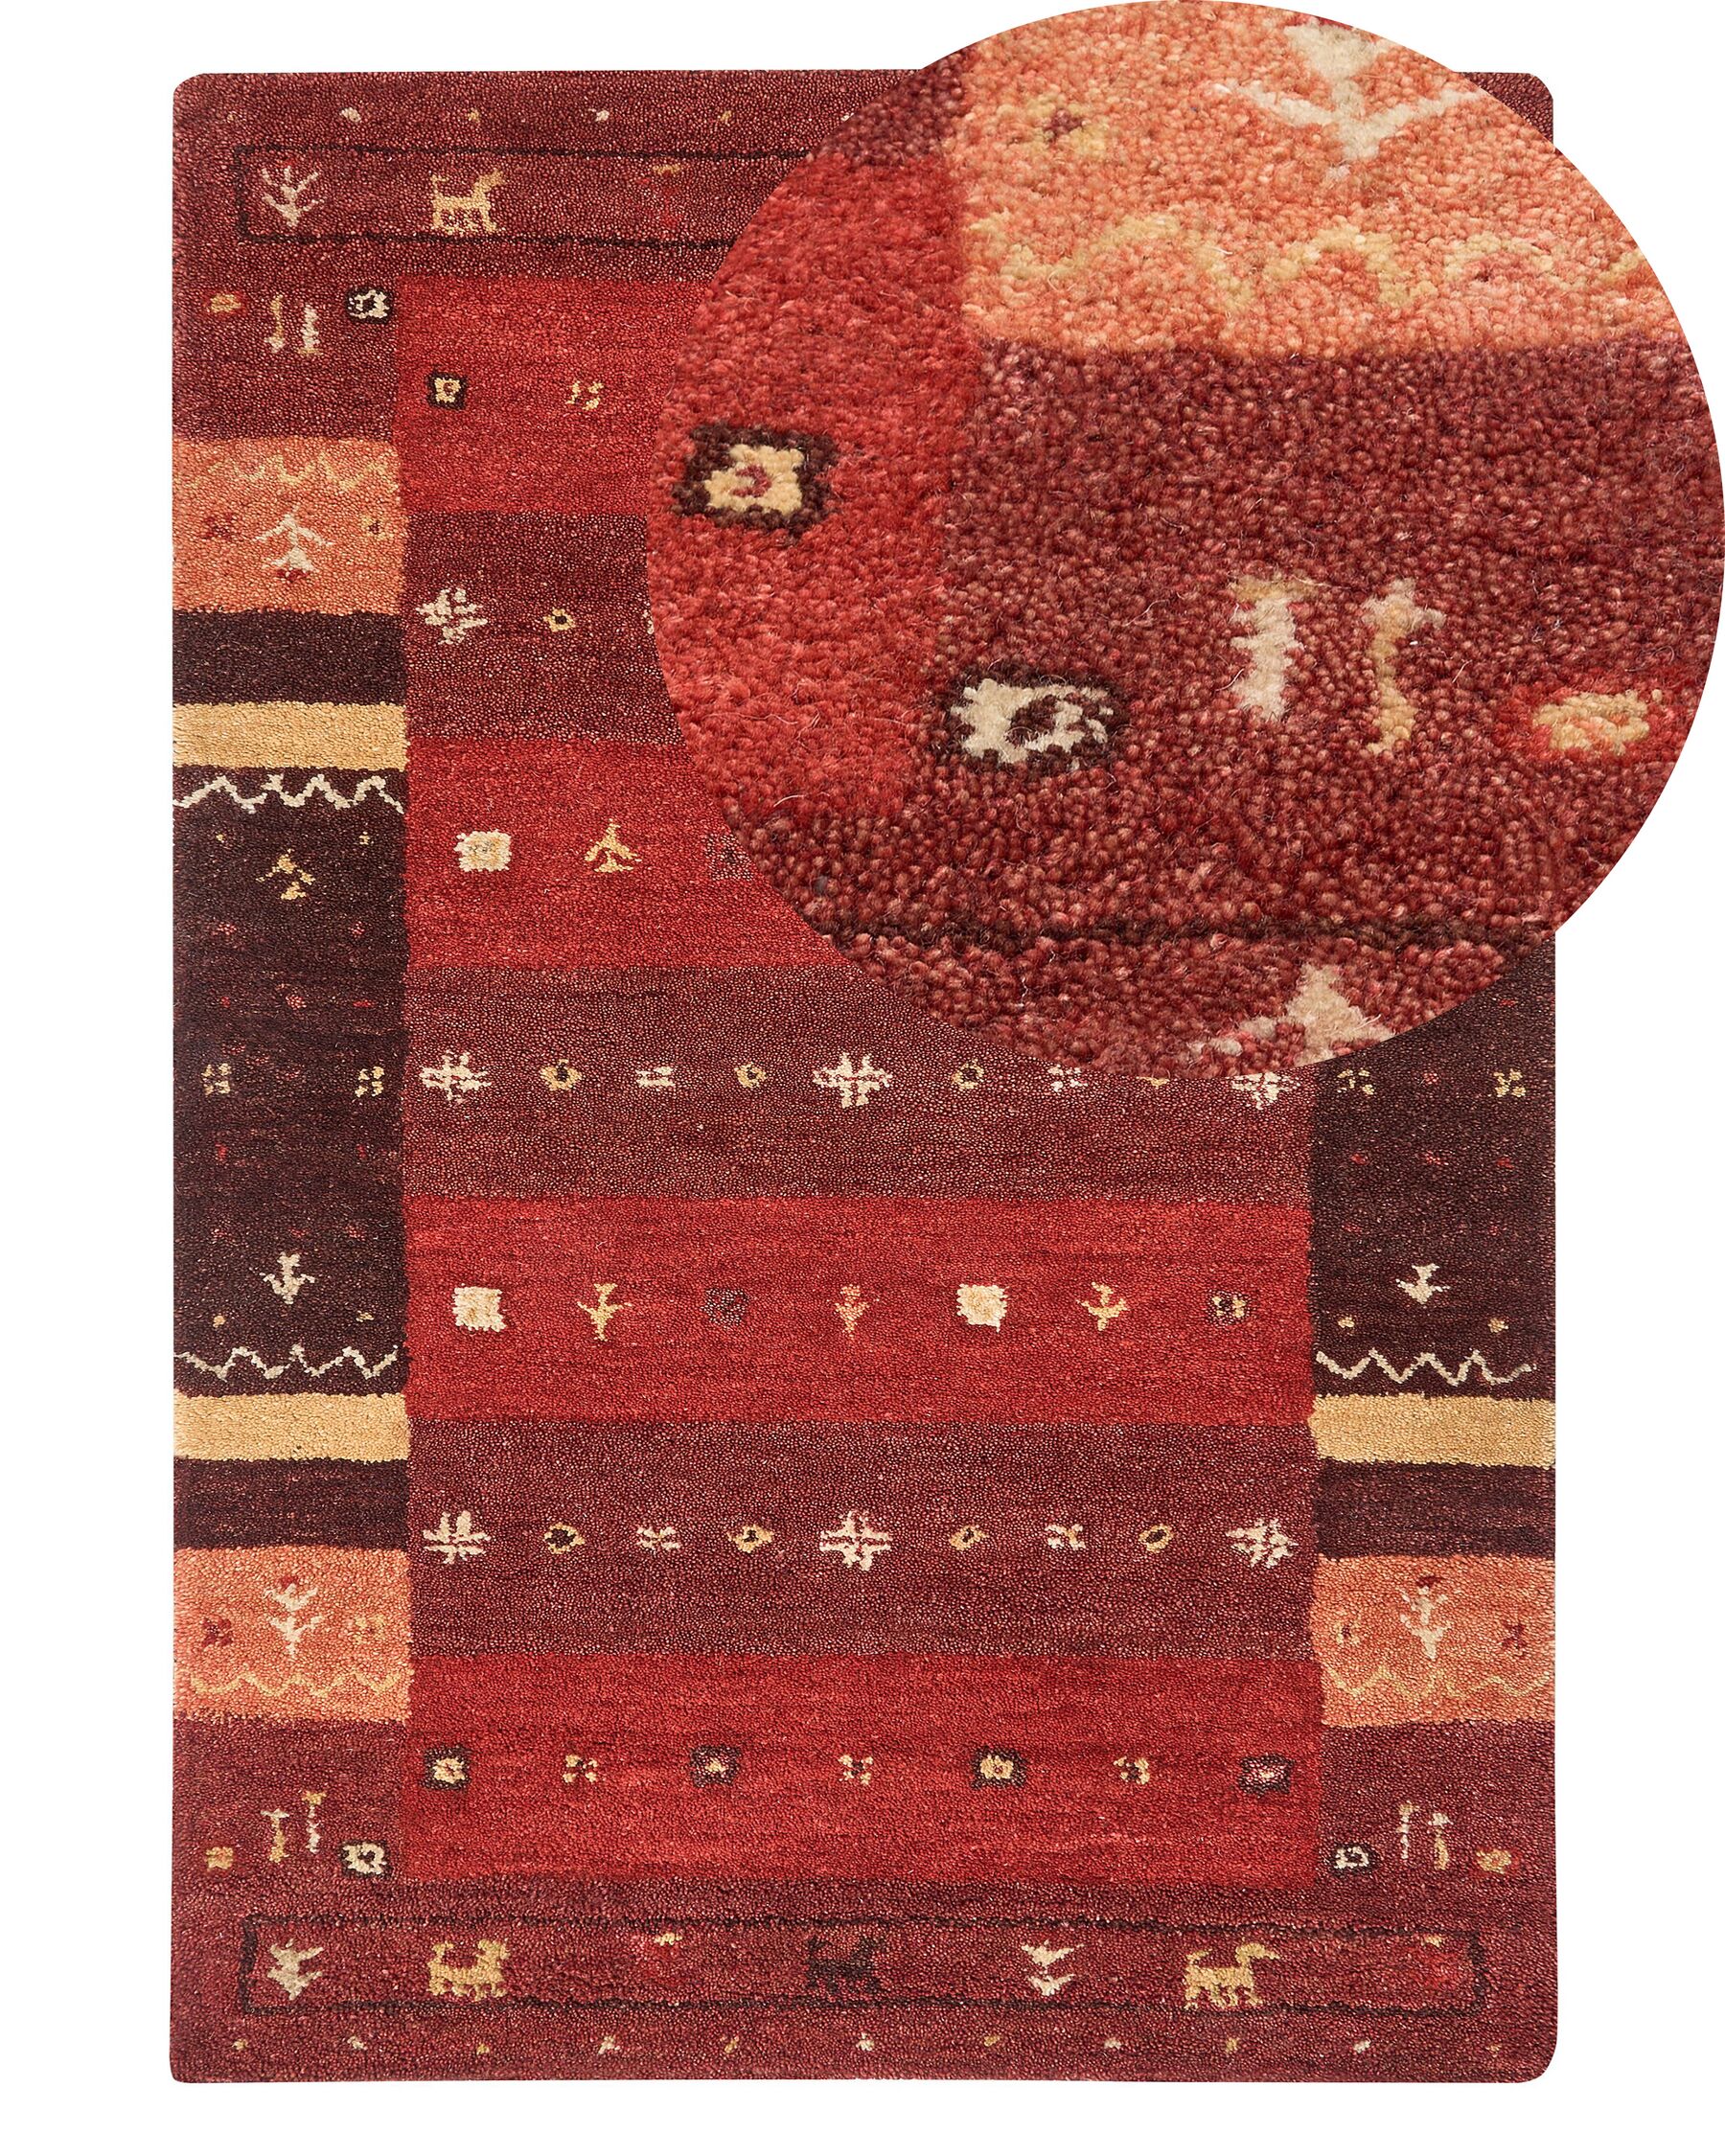 Vlnený koberec gabbeh 140 x 200 cm červený SINANLI_855906